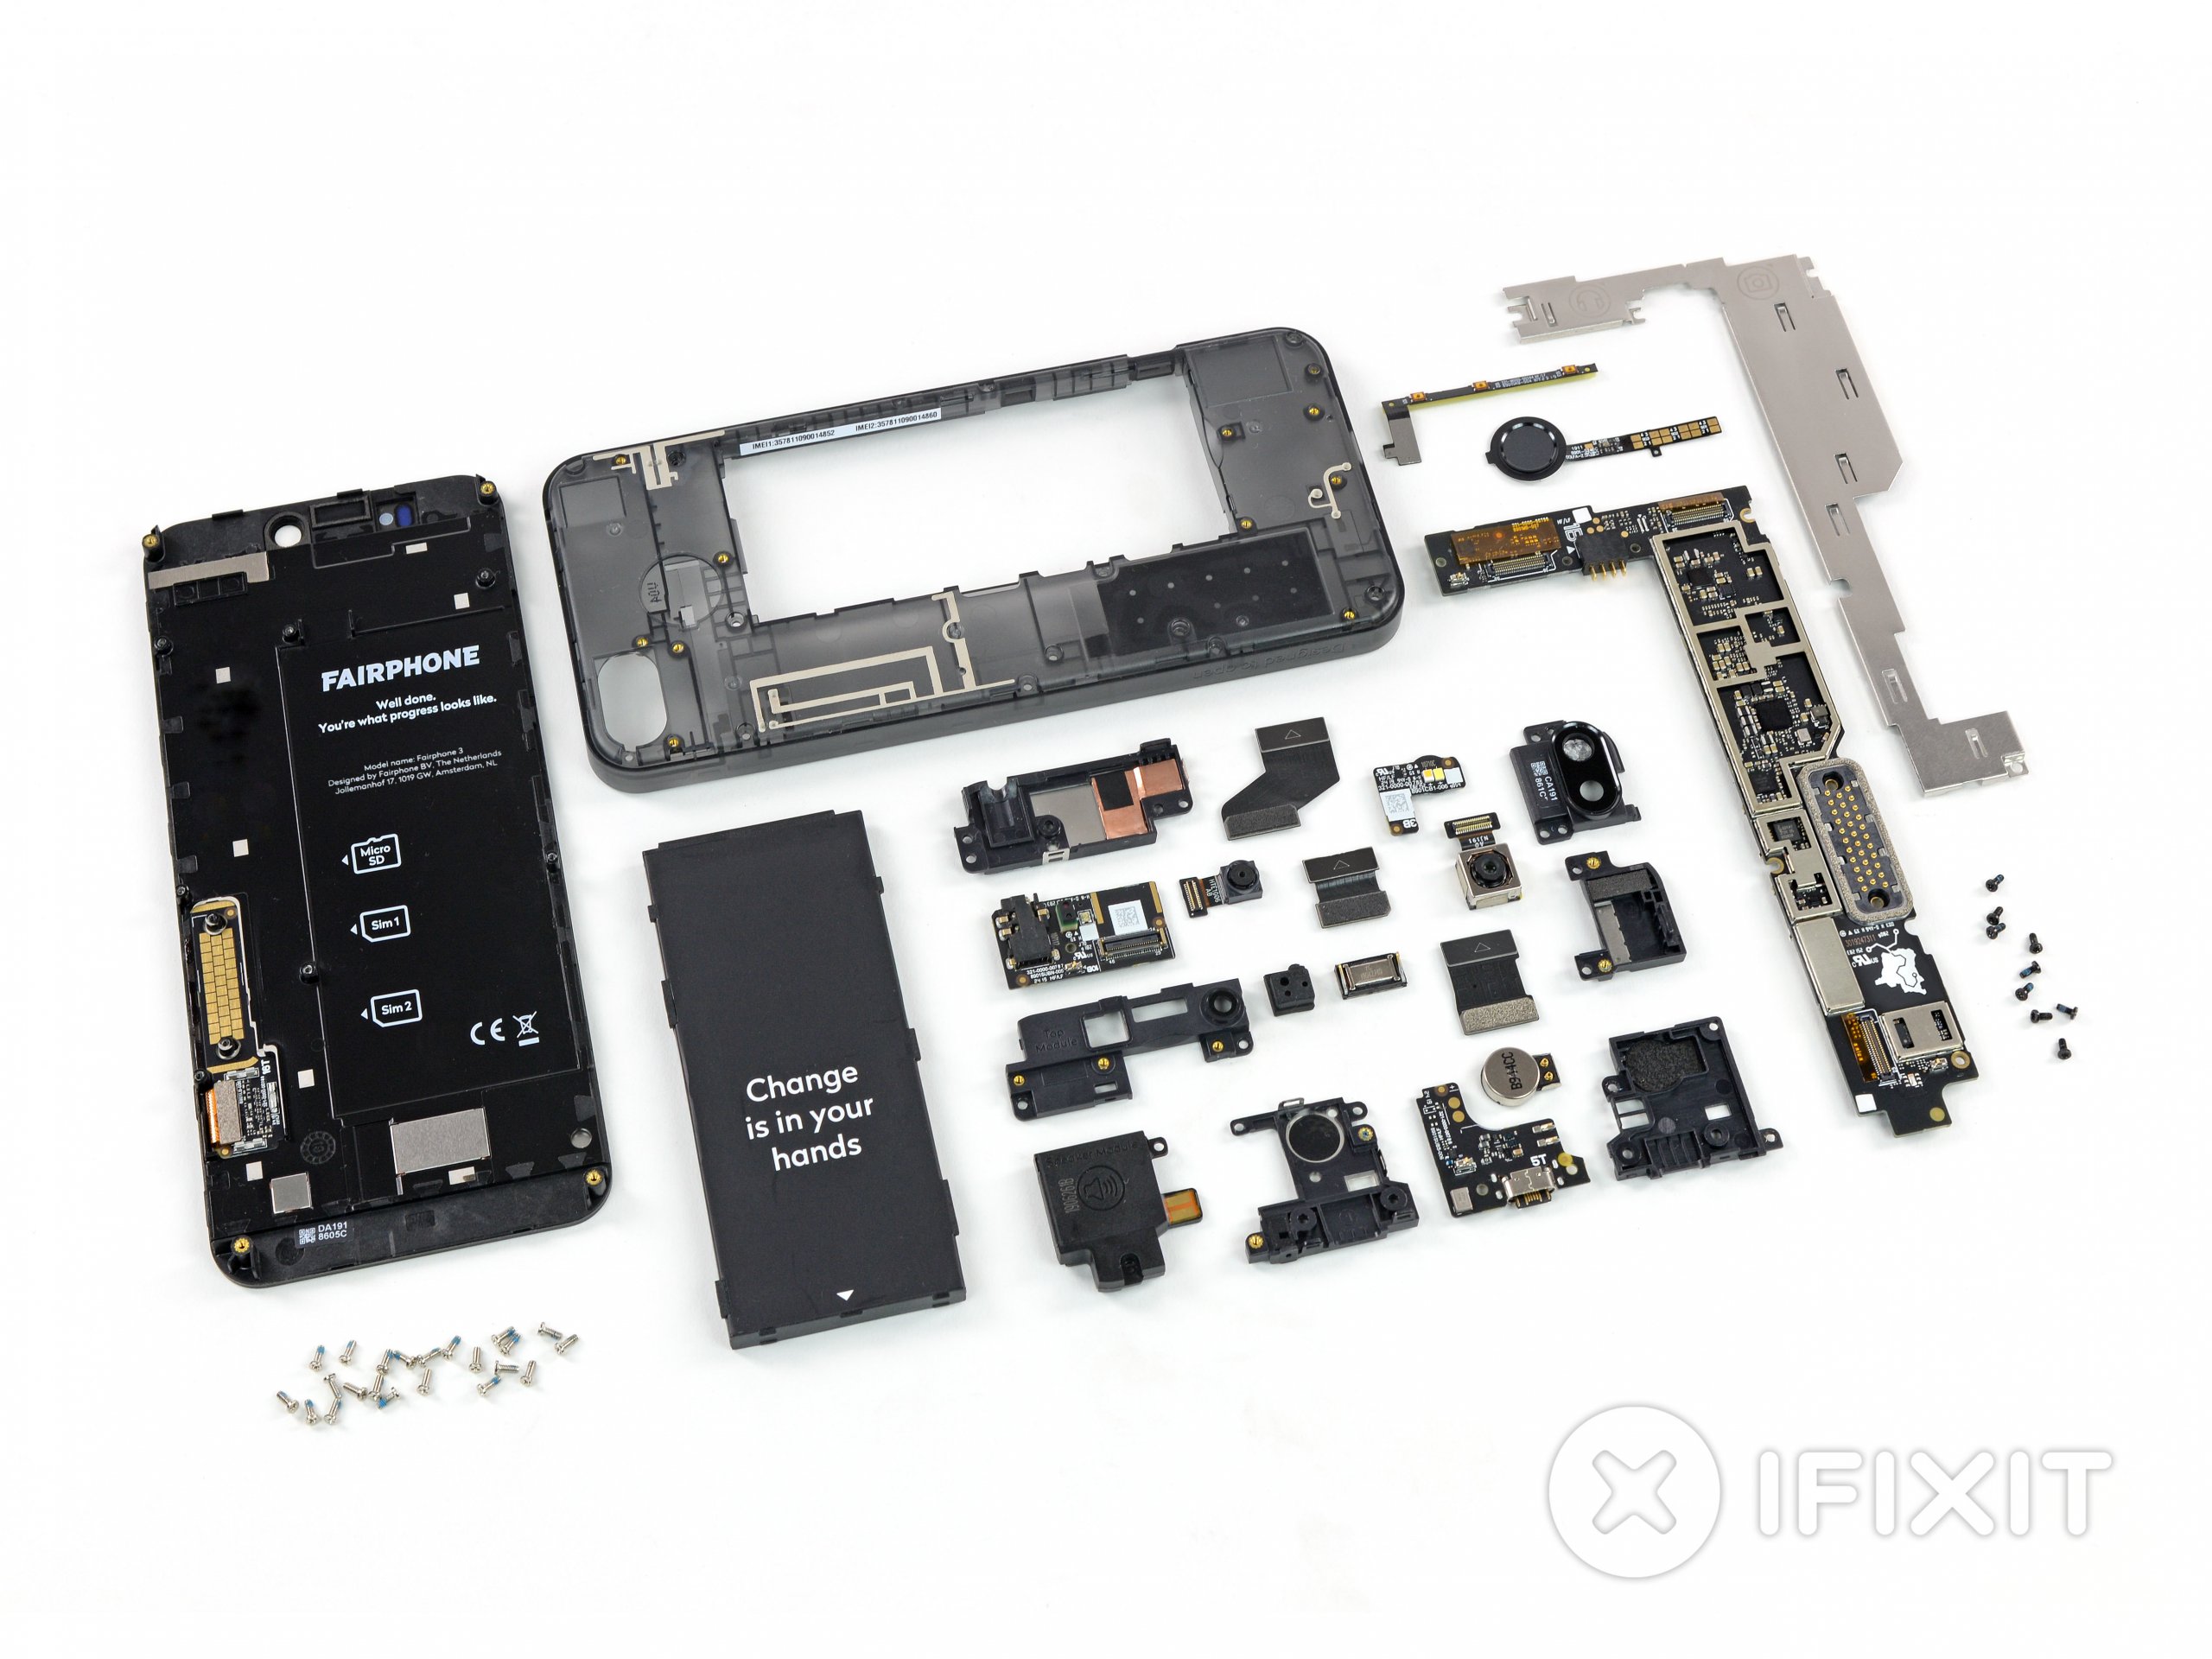 Fairphone 3 teardown layout